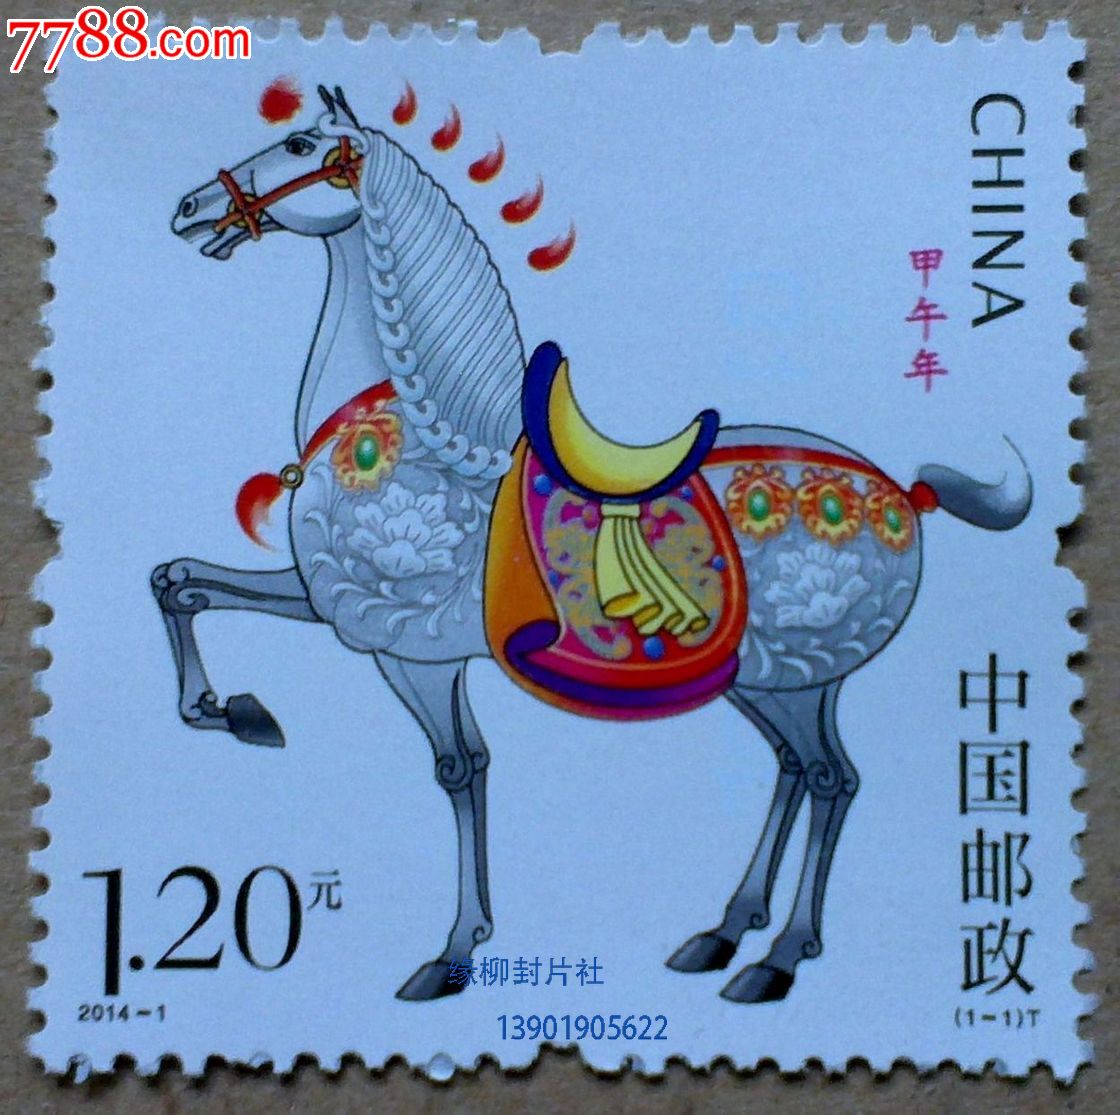 2014-1马年邮票(带荧光)三轮生肖马票有4连票-se21647337-中国收藏热线